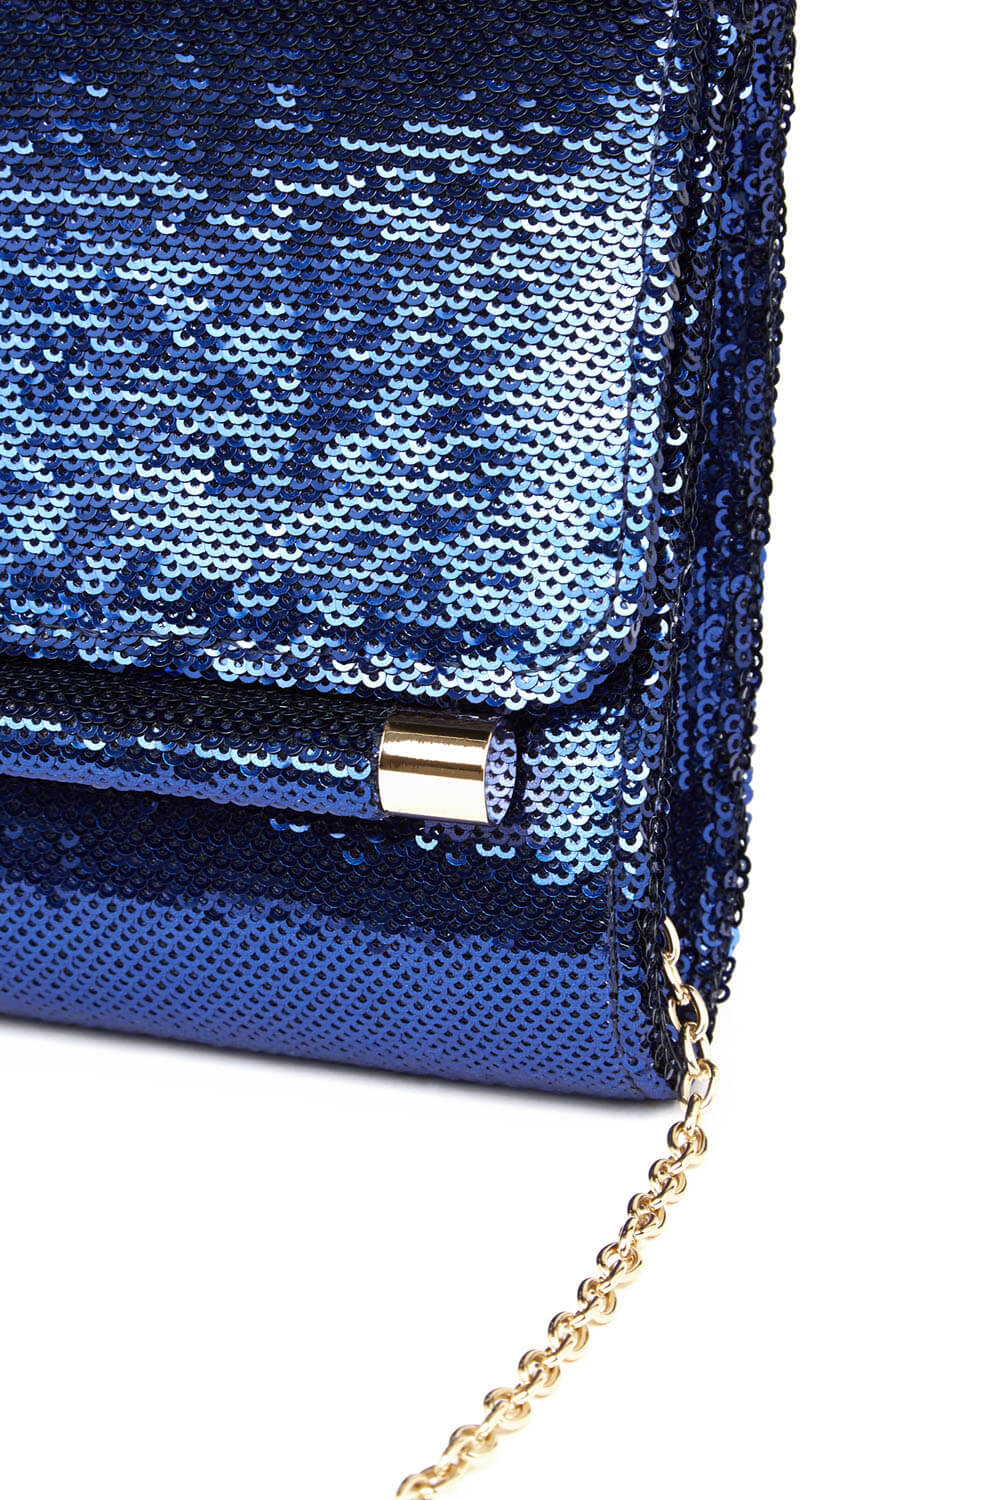 Blue Sequin Foldover Metal Bar Clutch Bag, Image 5 of 5